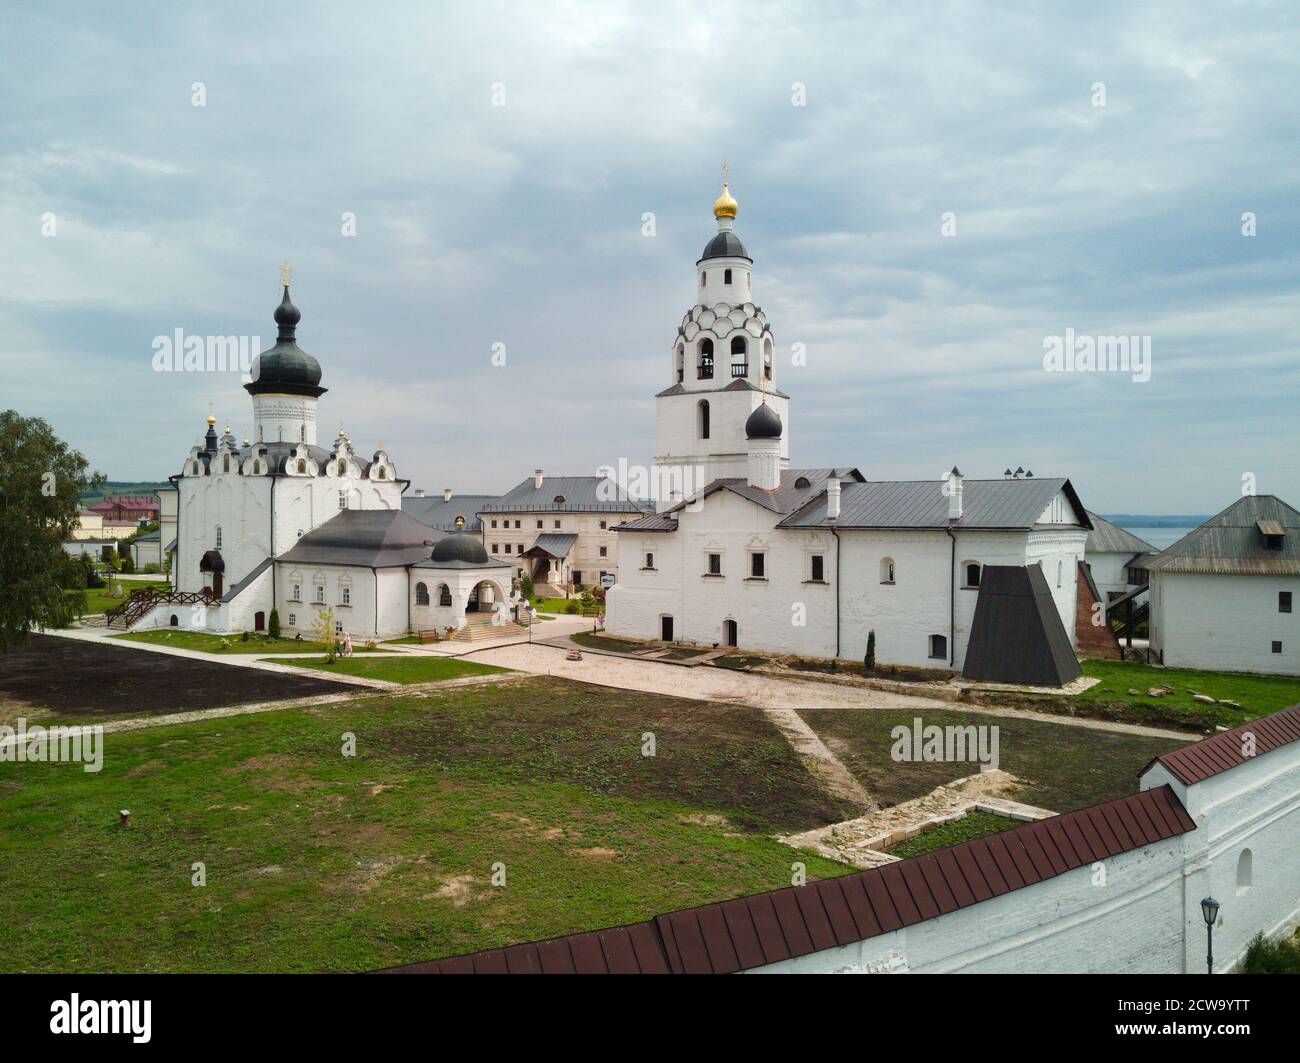 Kloster auf der Inselstadt Swijaschsk. Tatarstan Russland. Fotografiert von einer Drohne Stockfoto